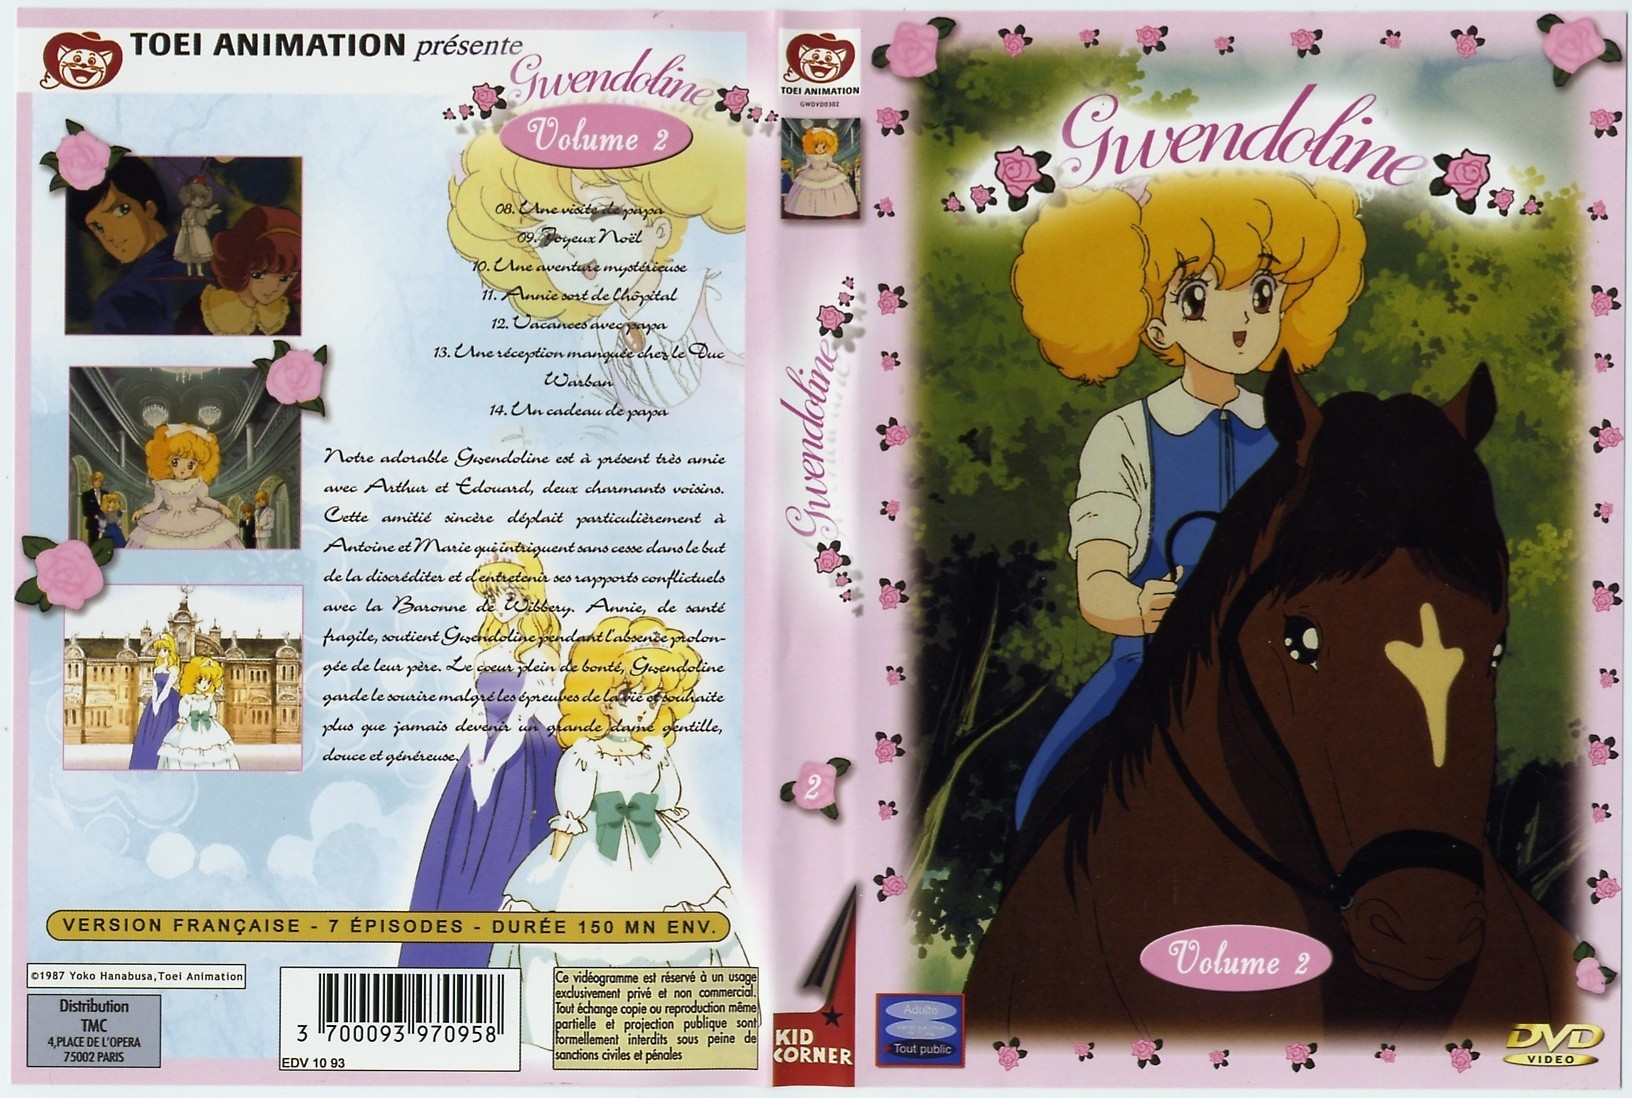 Jaquette DVD Gwendoline vol 2